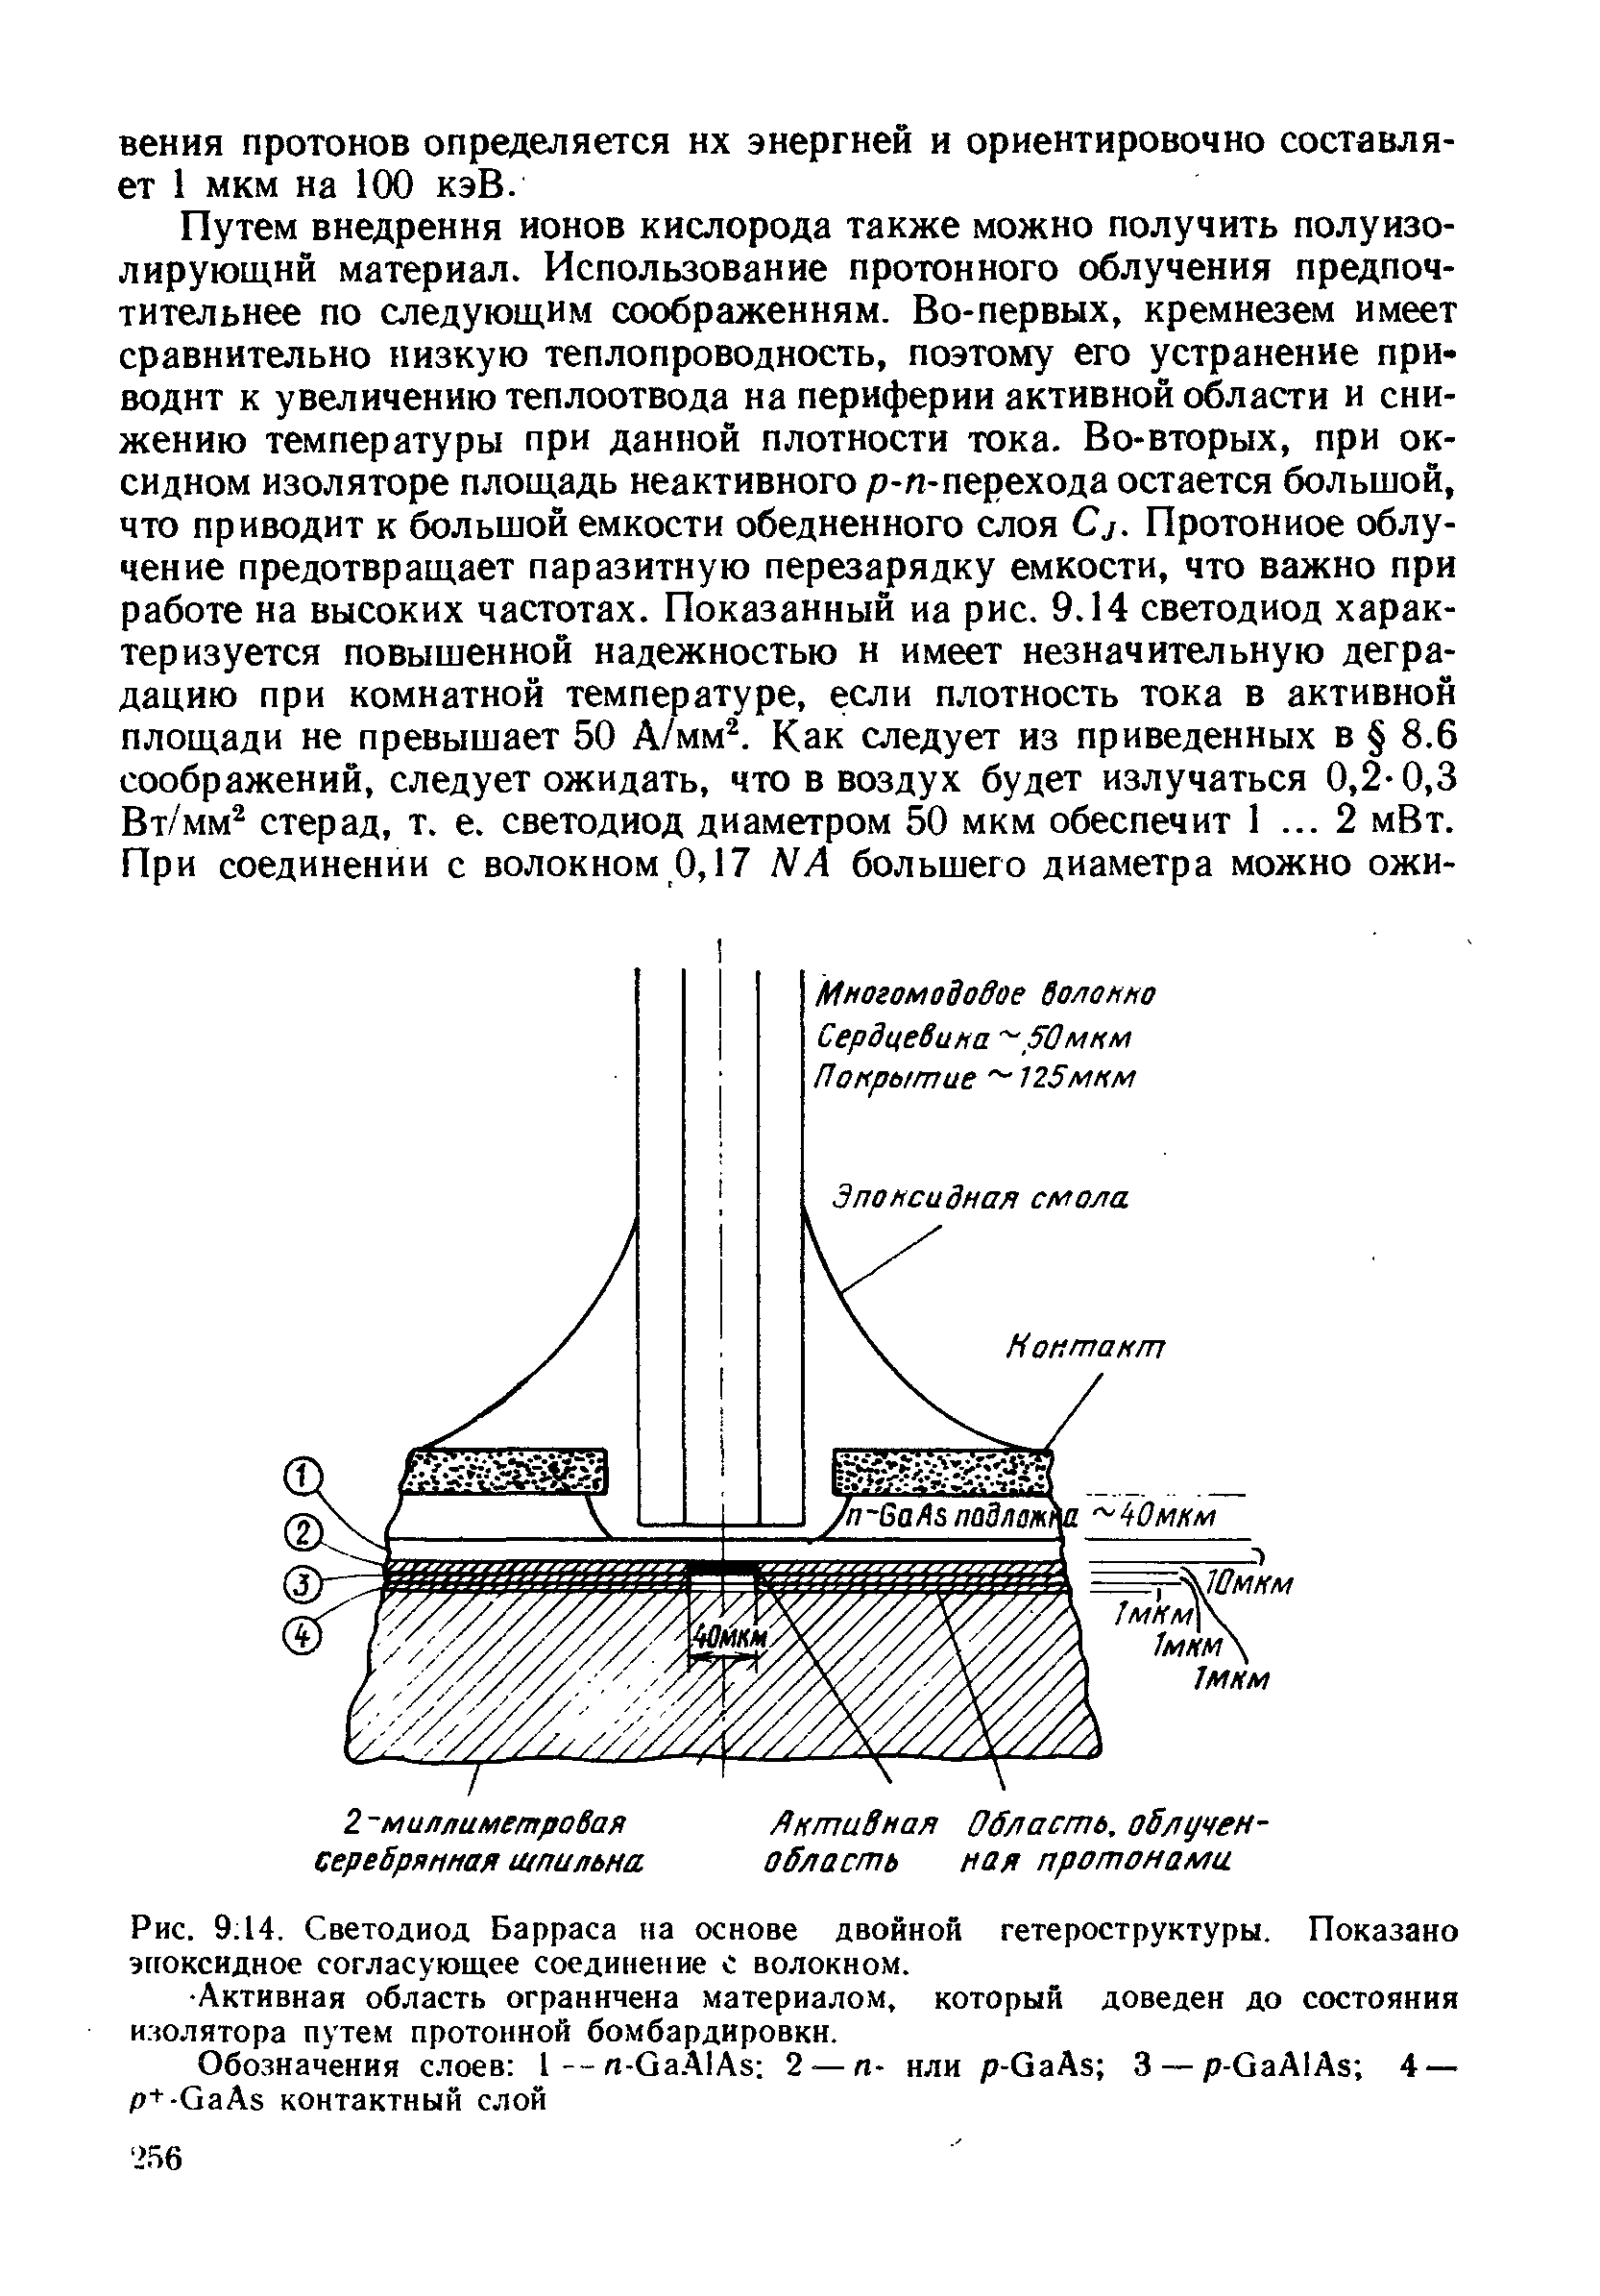 Рис. 9 14. Светодиод Барраса на основе двойной гетероструктуры. Показано эггоксидное согласующее соединение с волокном.
